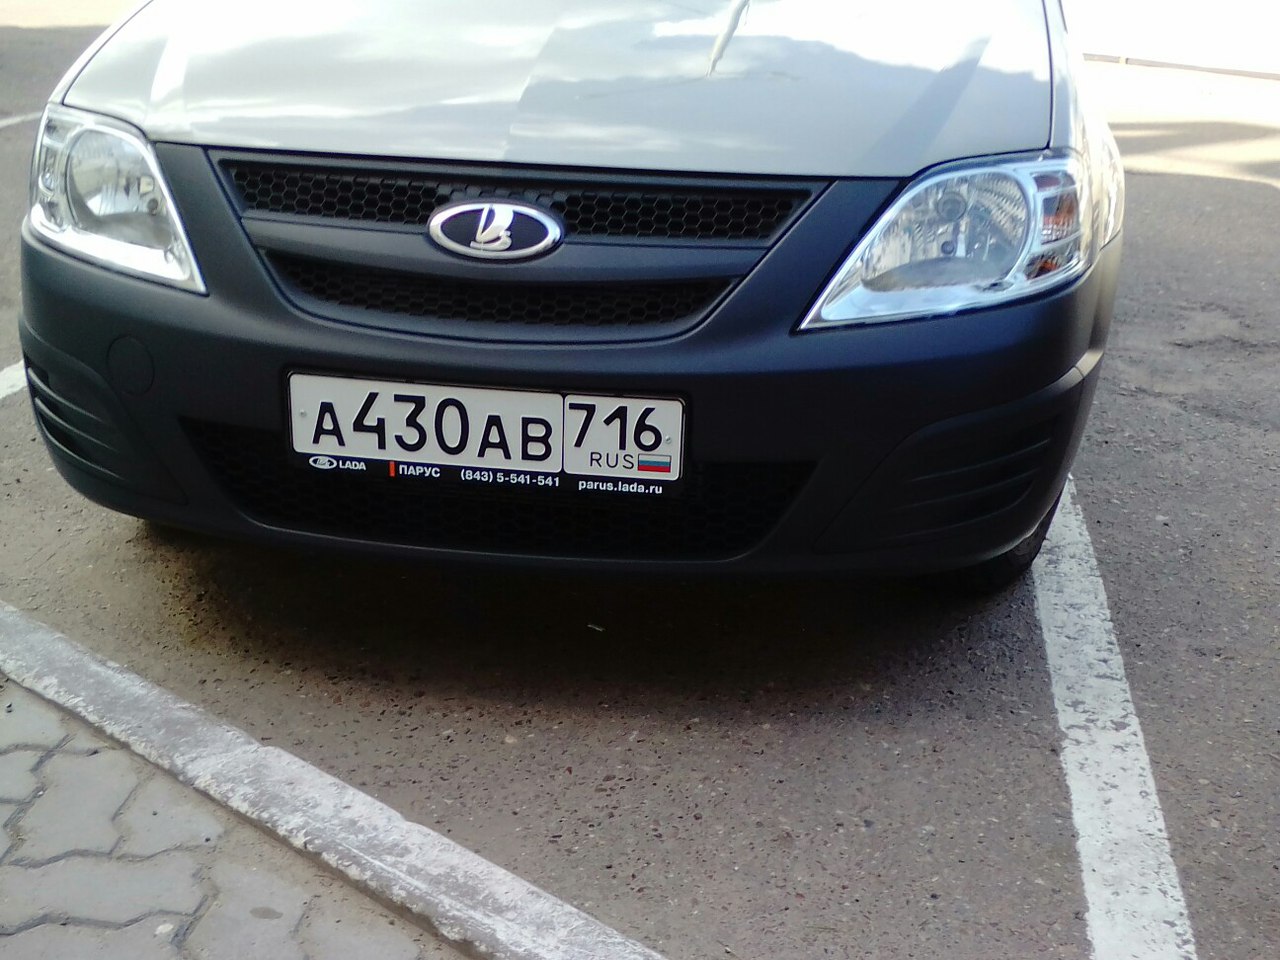 ГИБДД Татарстана начала выдавать номера машин с регионом «716»